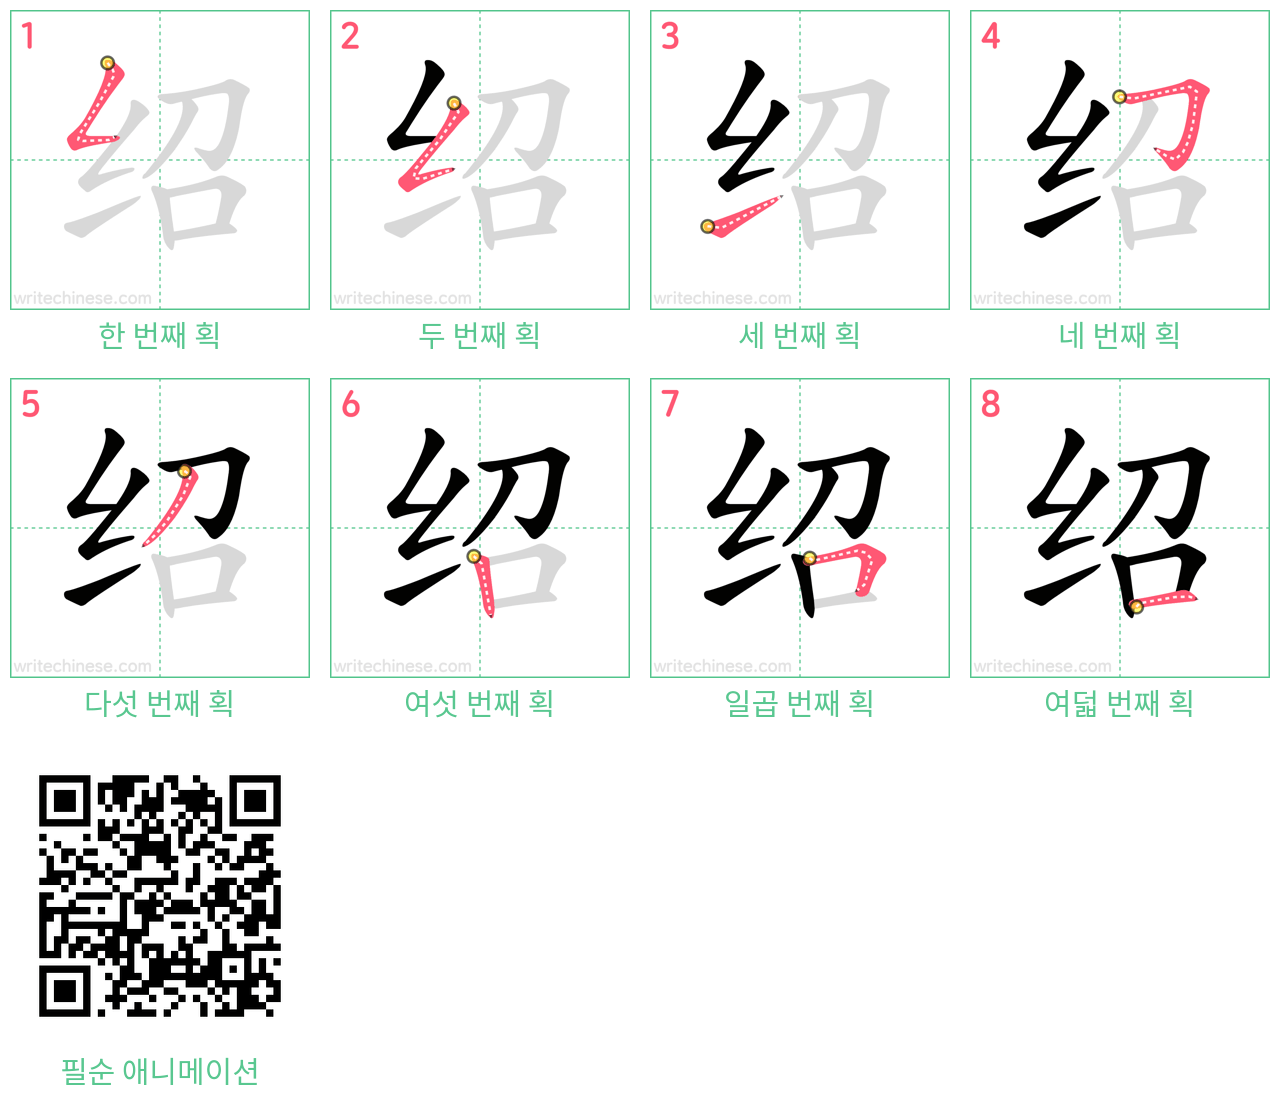 绍 step-by-step stroke order diagrams